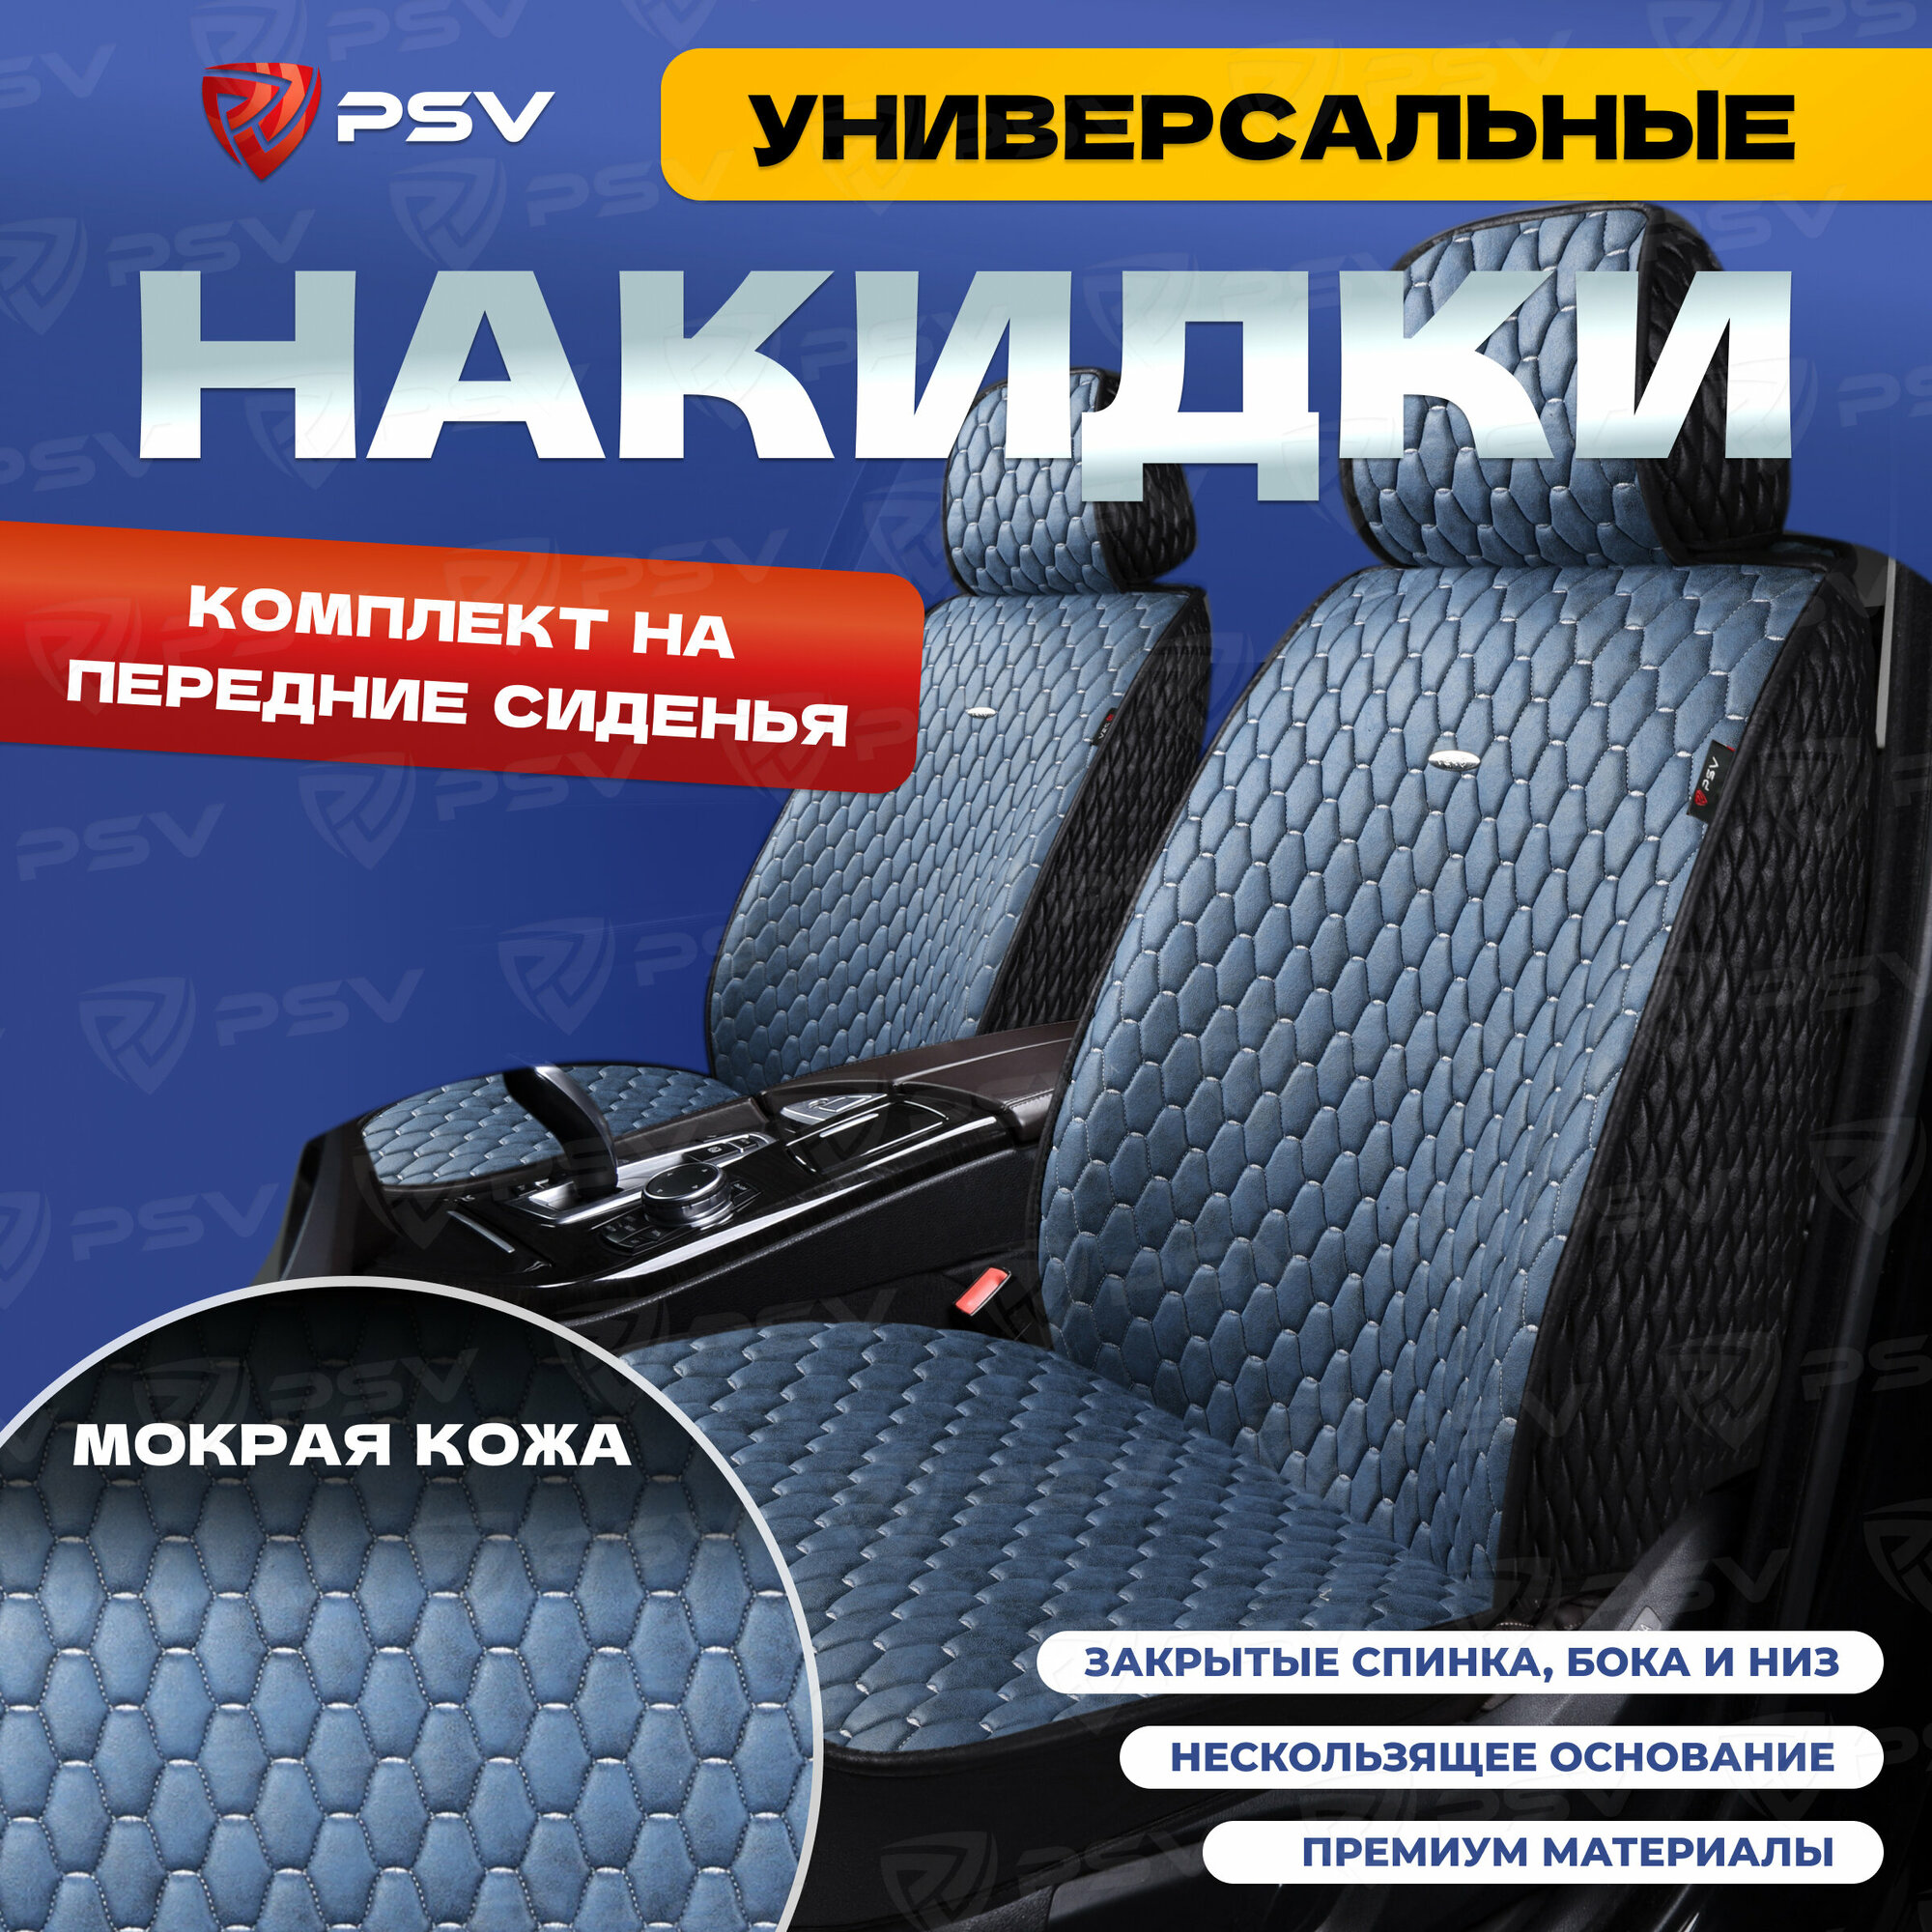 Накидки-чехлы универсальные в машину PSV 5D Skin 2 FRONT (Черно-синий), на передние сиденья, мокрая кожа